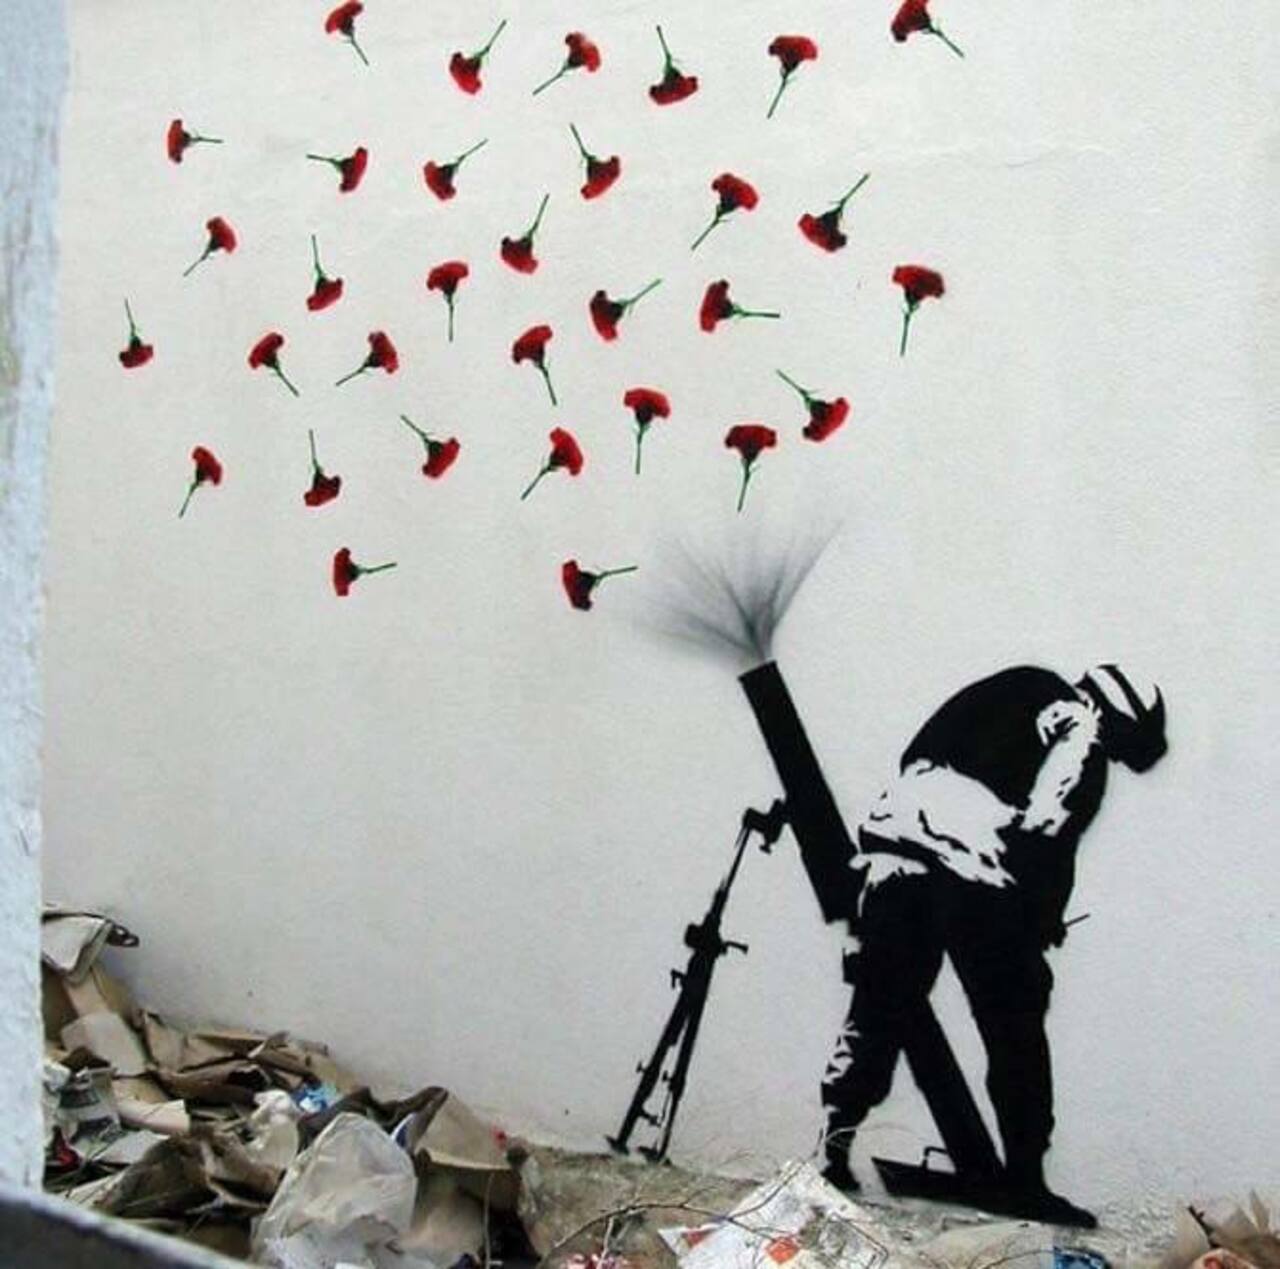 FLOWER BOMBS - #Creative #Streetart#flower #bomb #war #urbanart #love #life #peace #art http://beartistbeart.com/2016/08/17/flower-bombs-creative-streetart https://t.co/NDRPAoEg1T